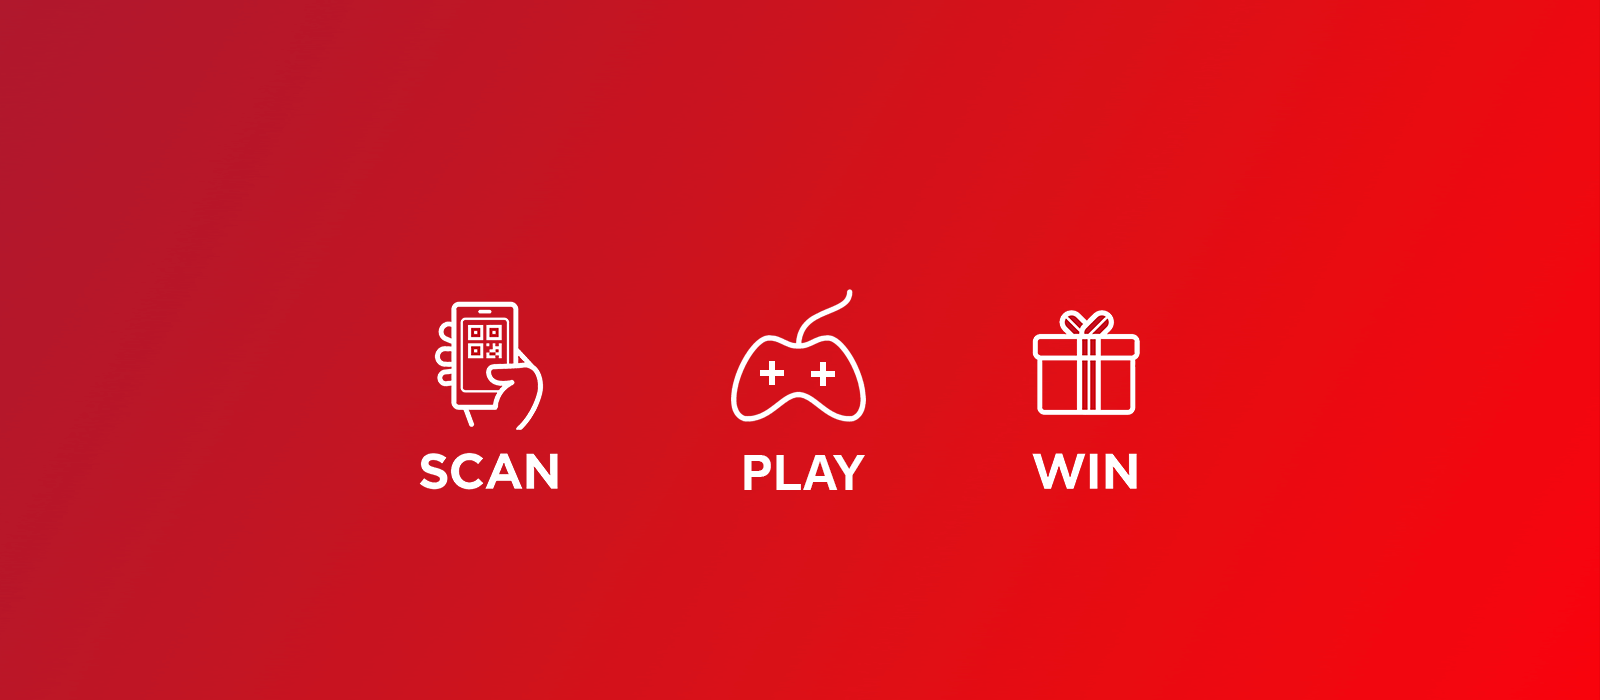 Logo Scan, Play, Win sur fond rouge de Coca-Cola